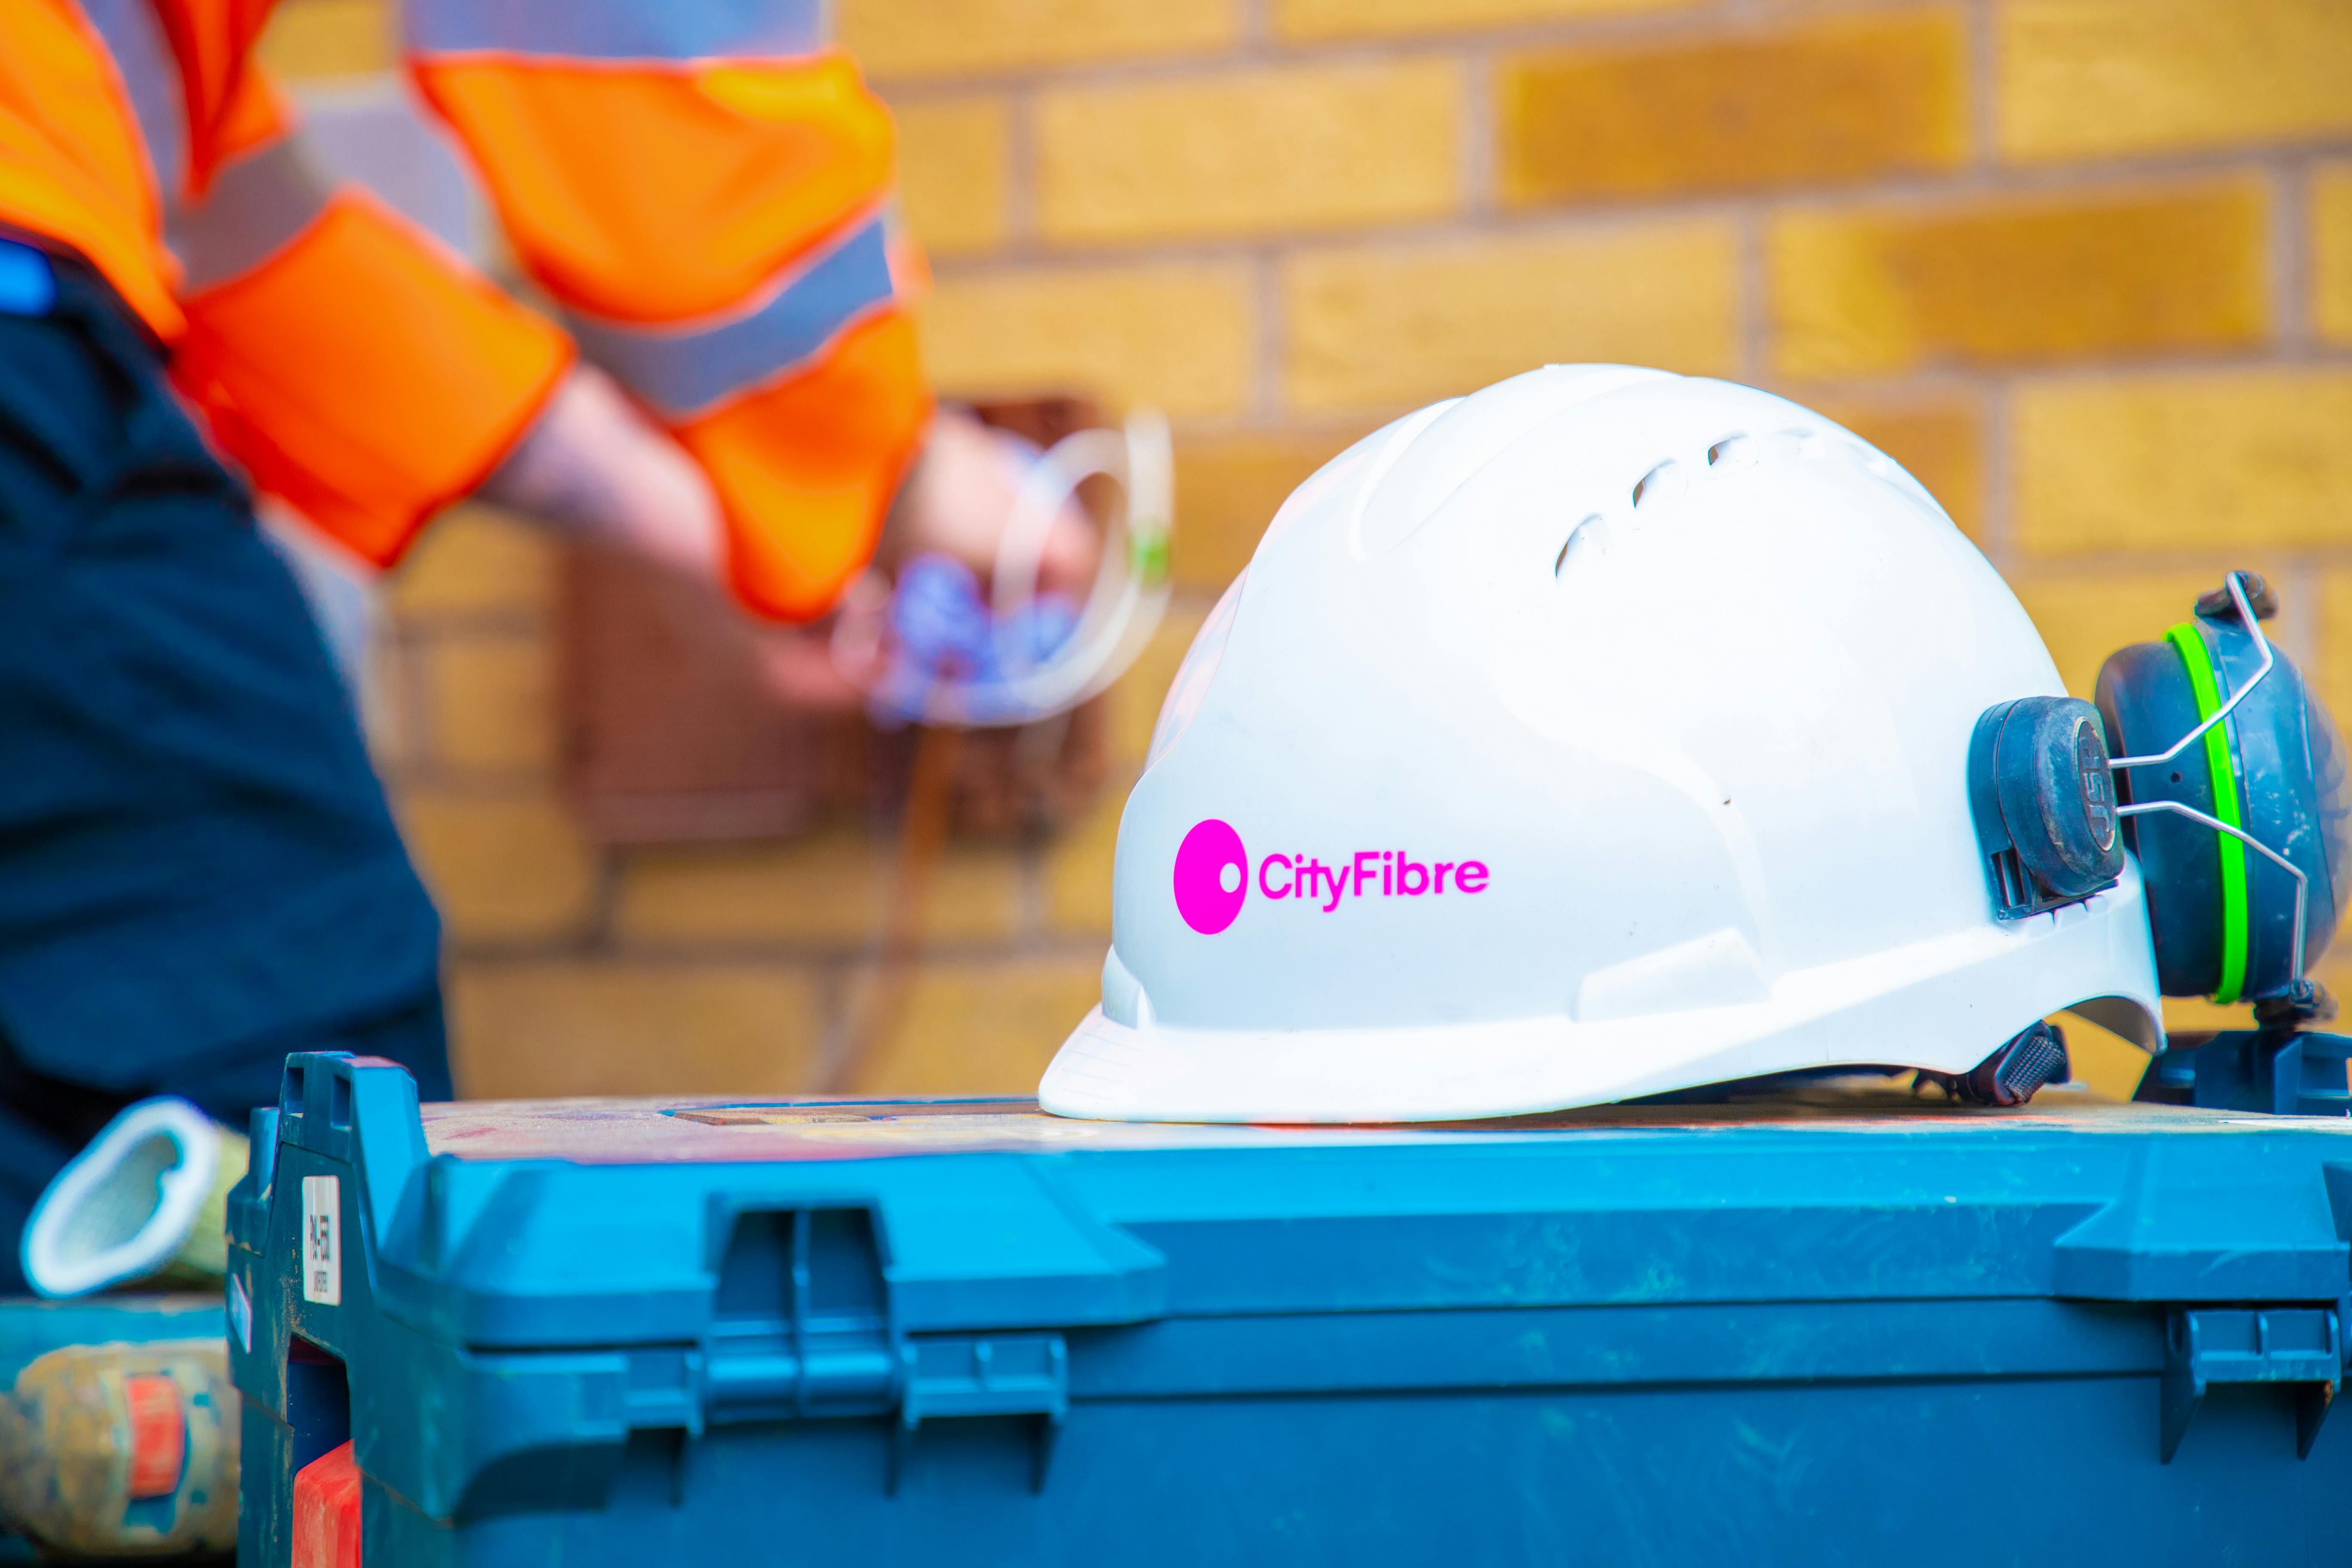 Weißer Glasfaser-Ingenieurhelm mit CityFibre-Logo in Pink